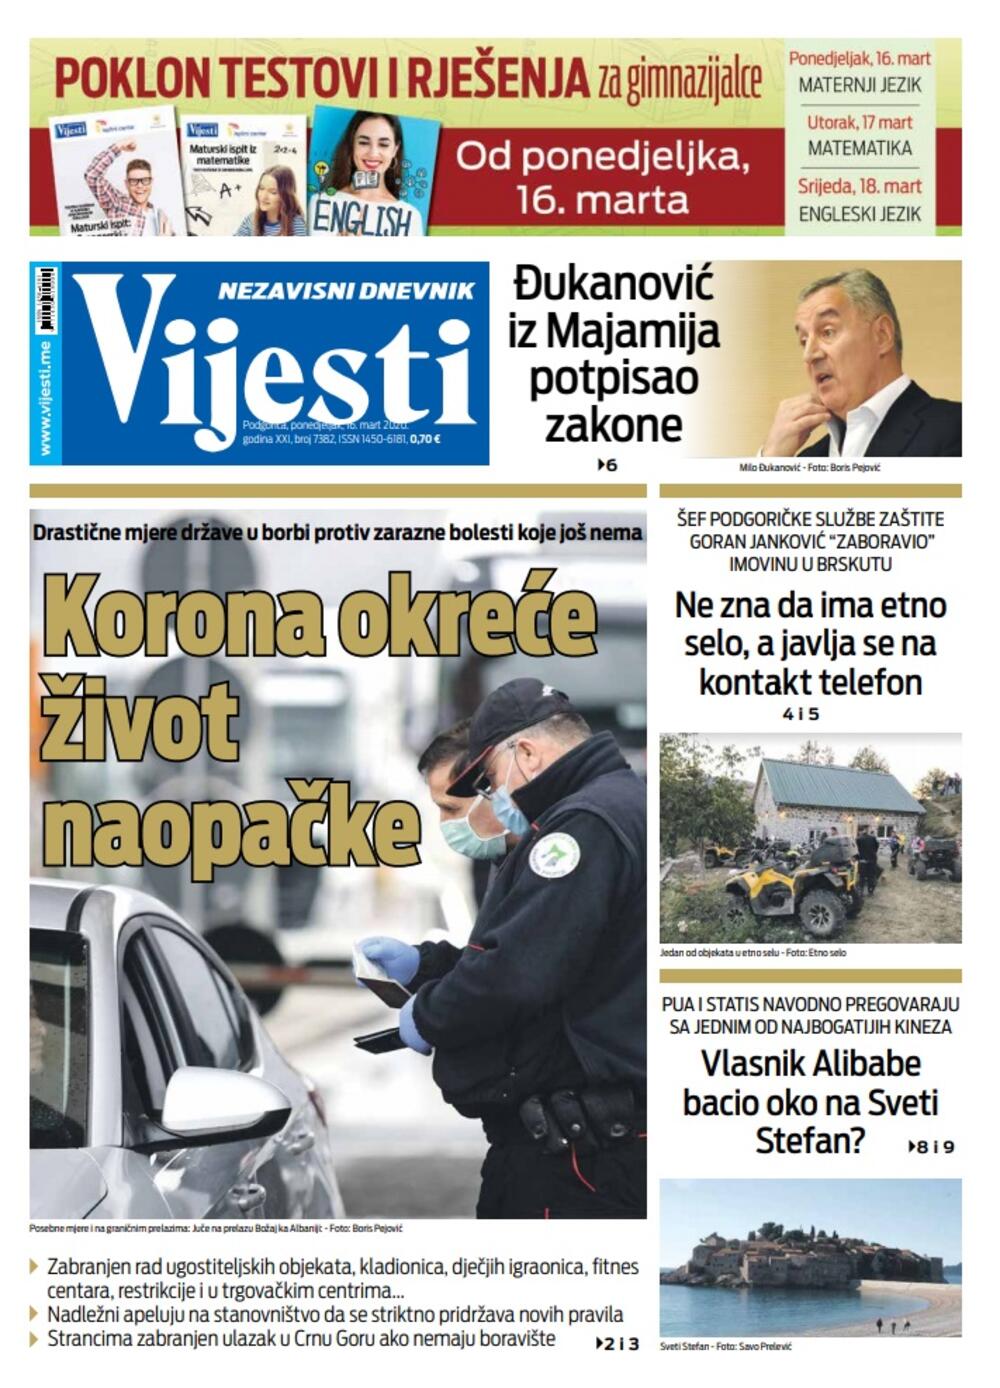 Naslovna strana "Vijesti" za 16. mart 2020., Foto: Vijesti